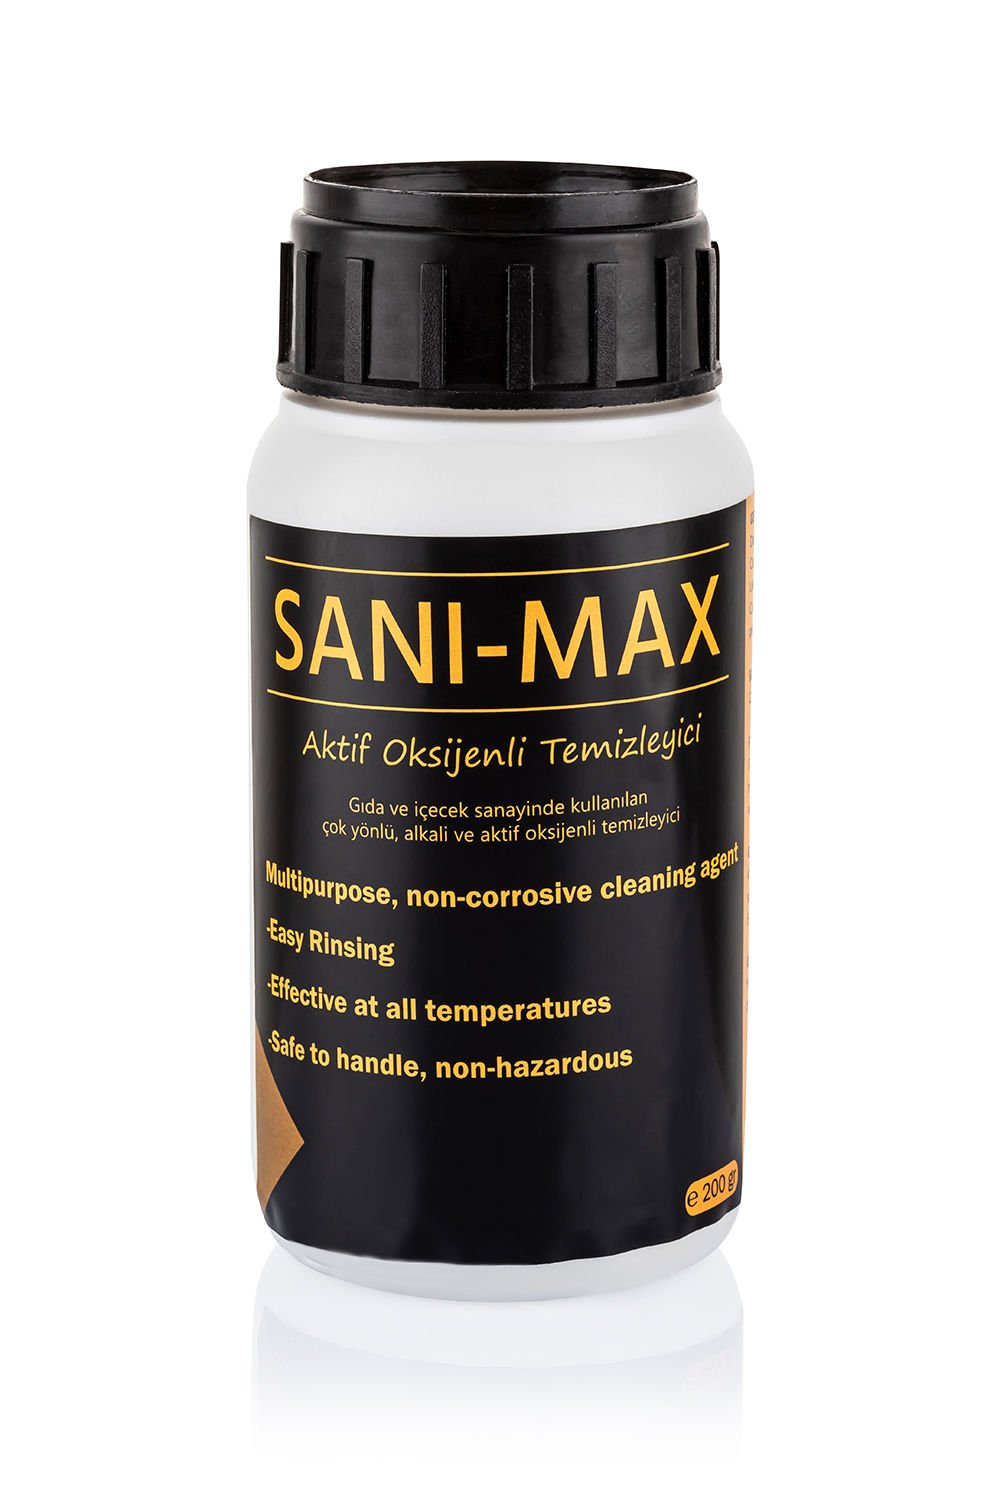 Sanimax Alkali Temizleyici - 200 g.